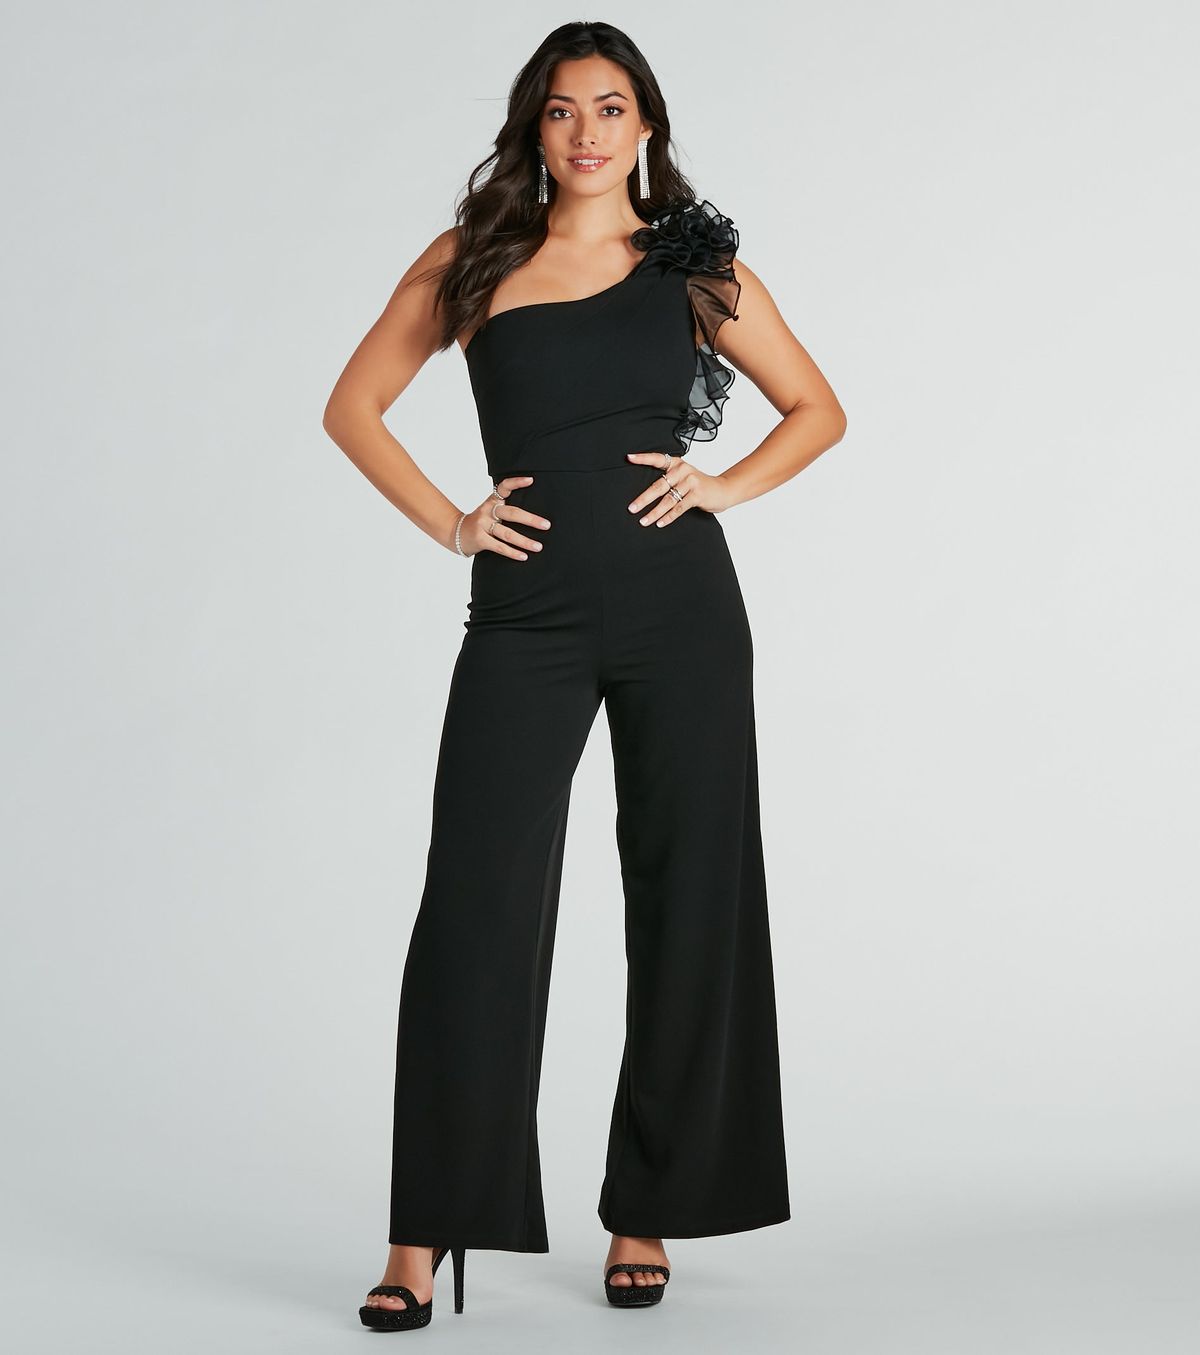 Style 06502-2413 Windsor Size S One Shoulder Black Formal Jumpsuit on Queenly